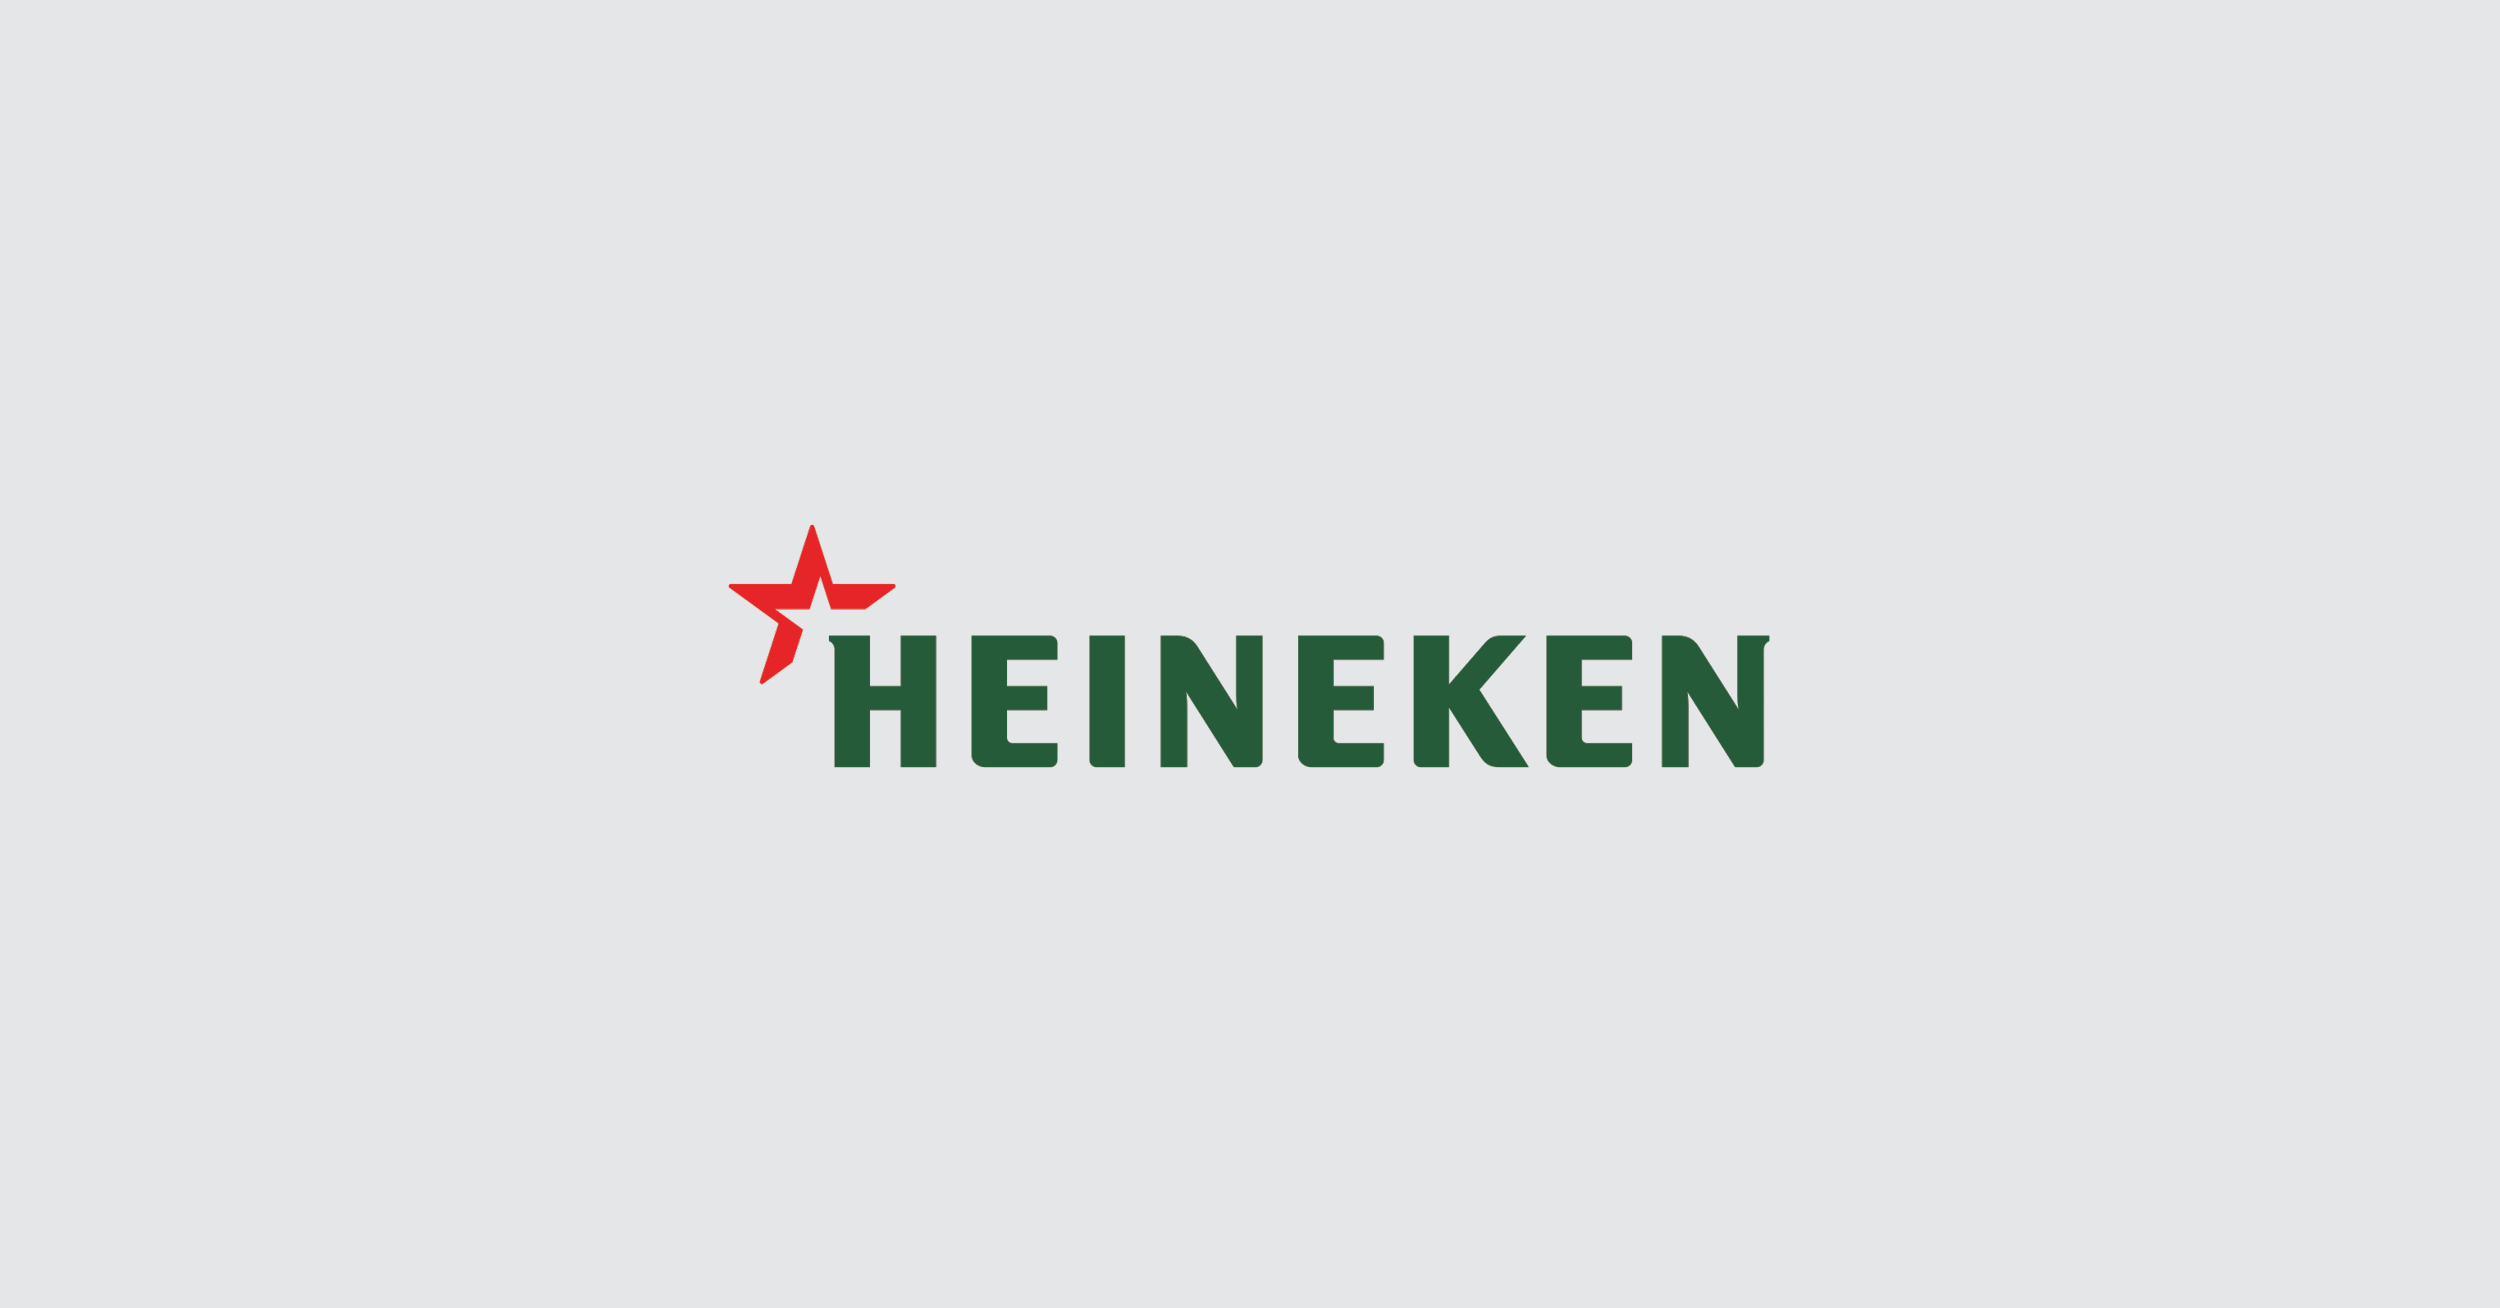 Heineken case study